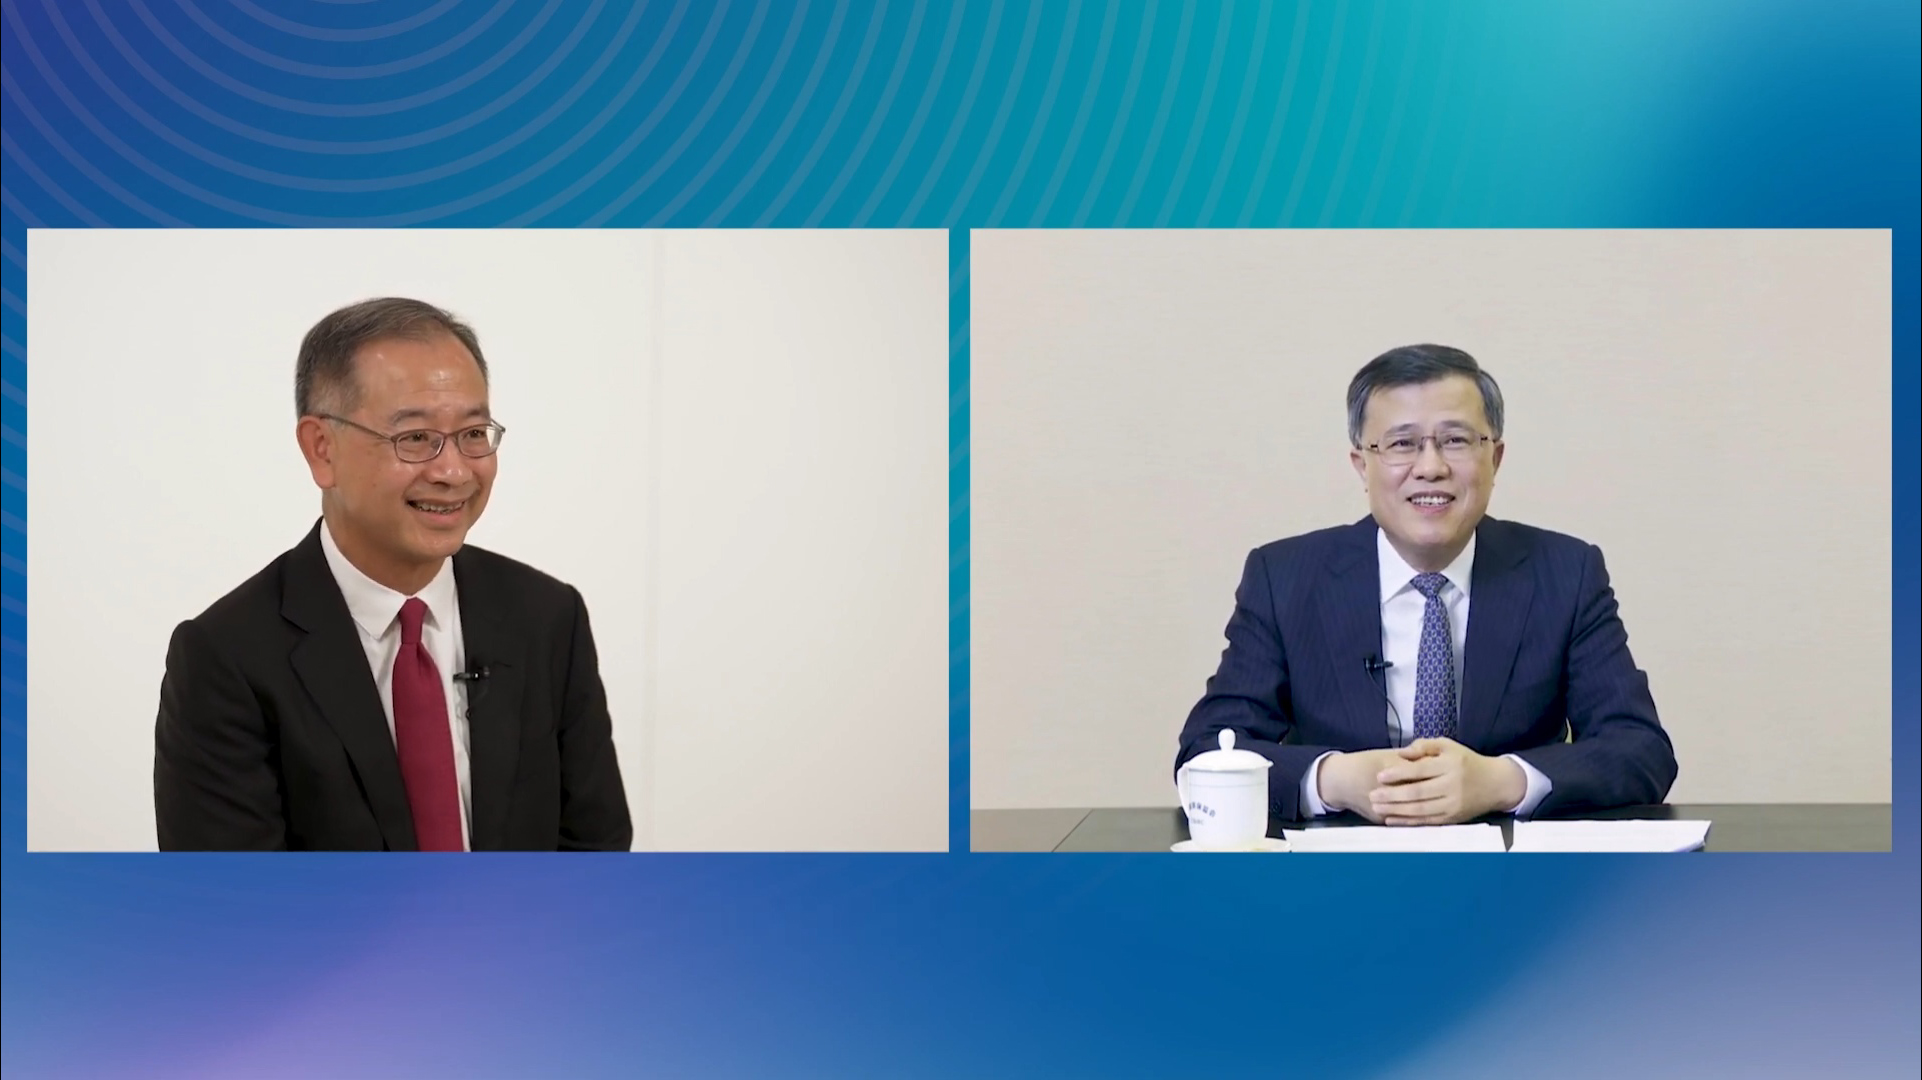 (左至右) 香港金融管理局總裁余偉文; 中國銀保監會副主席肖遠企